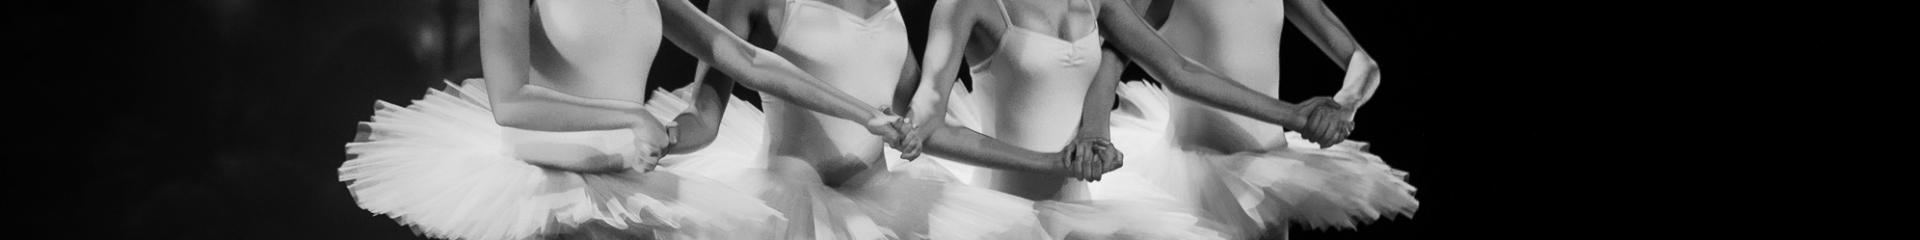 Fyra flickor i balettkjol håller händer.